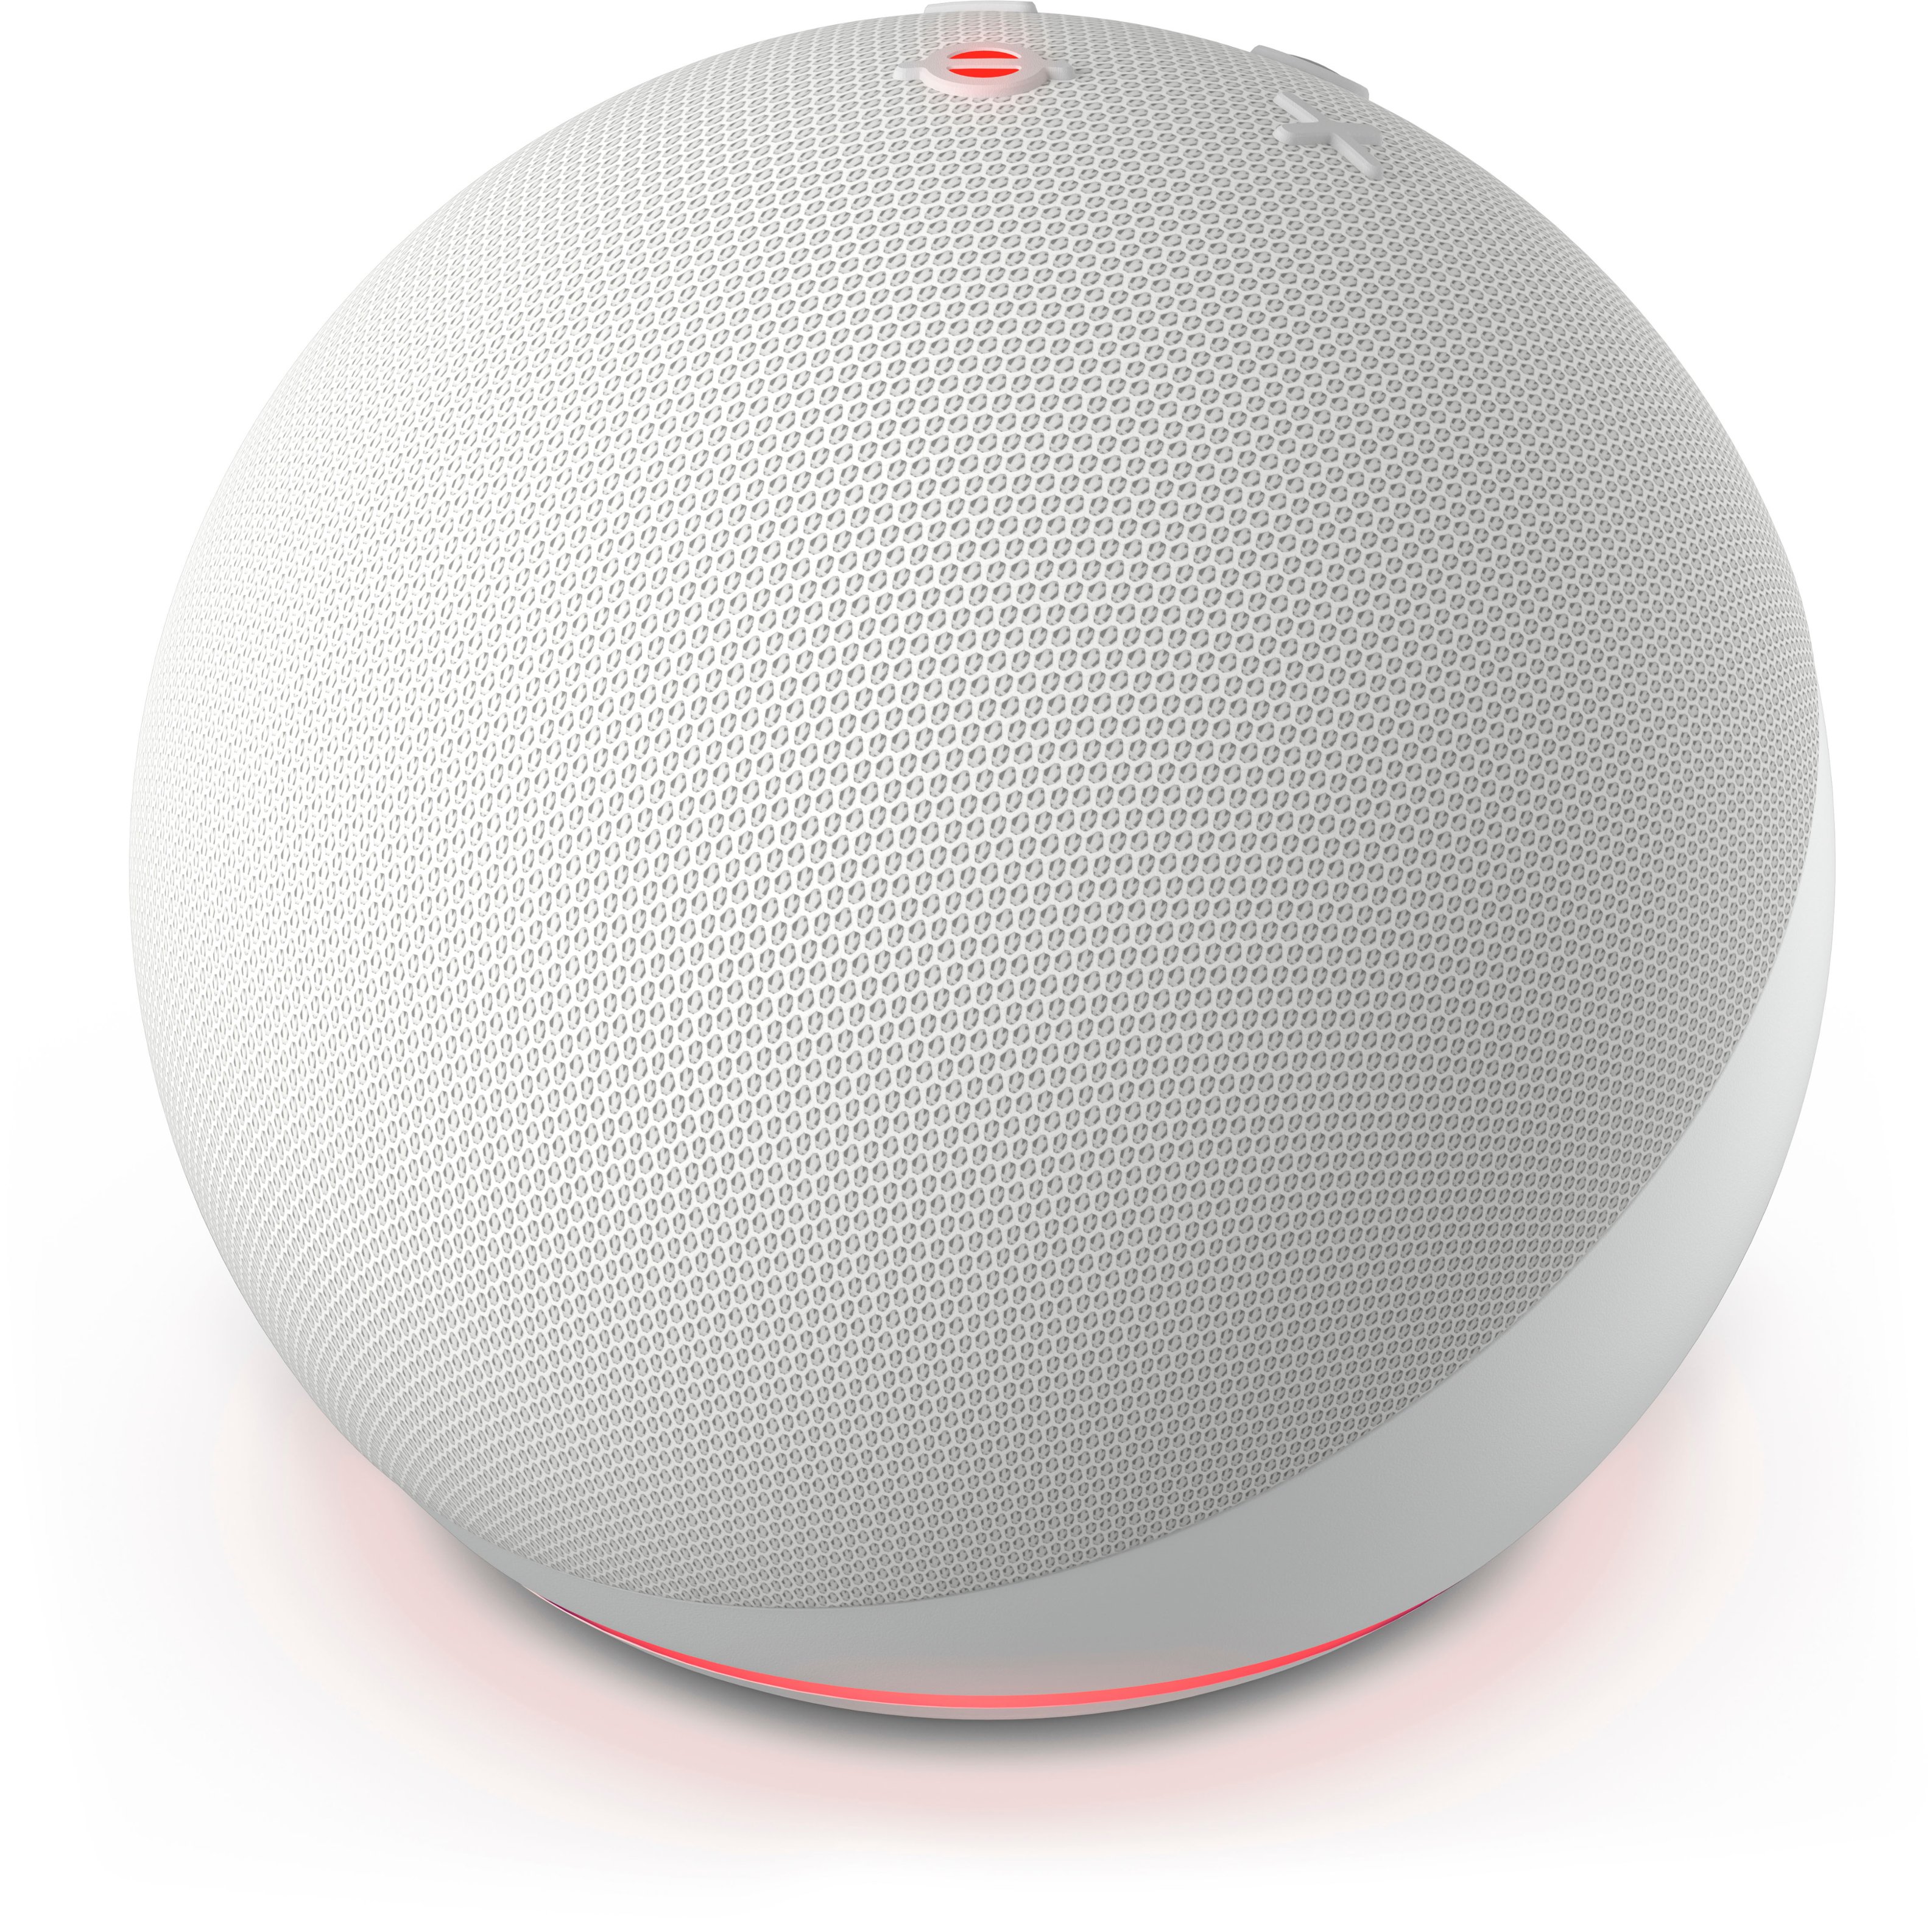 Echo Dot 5th Gen Smart Speaker Teardown